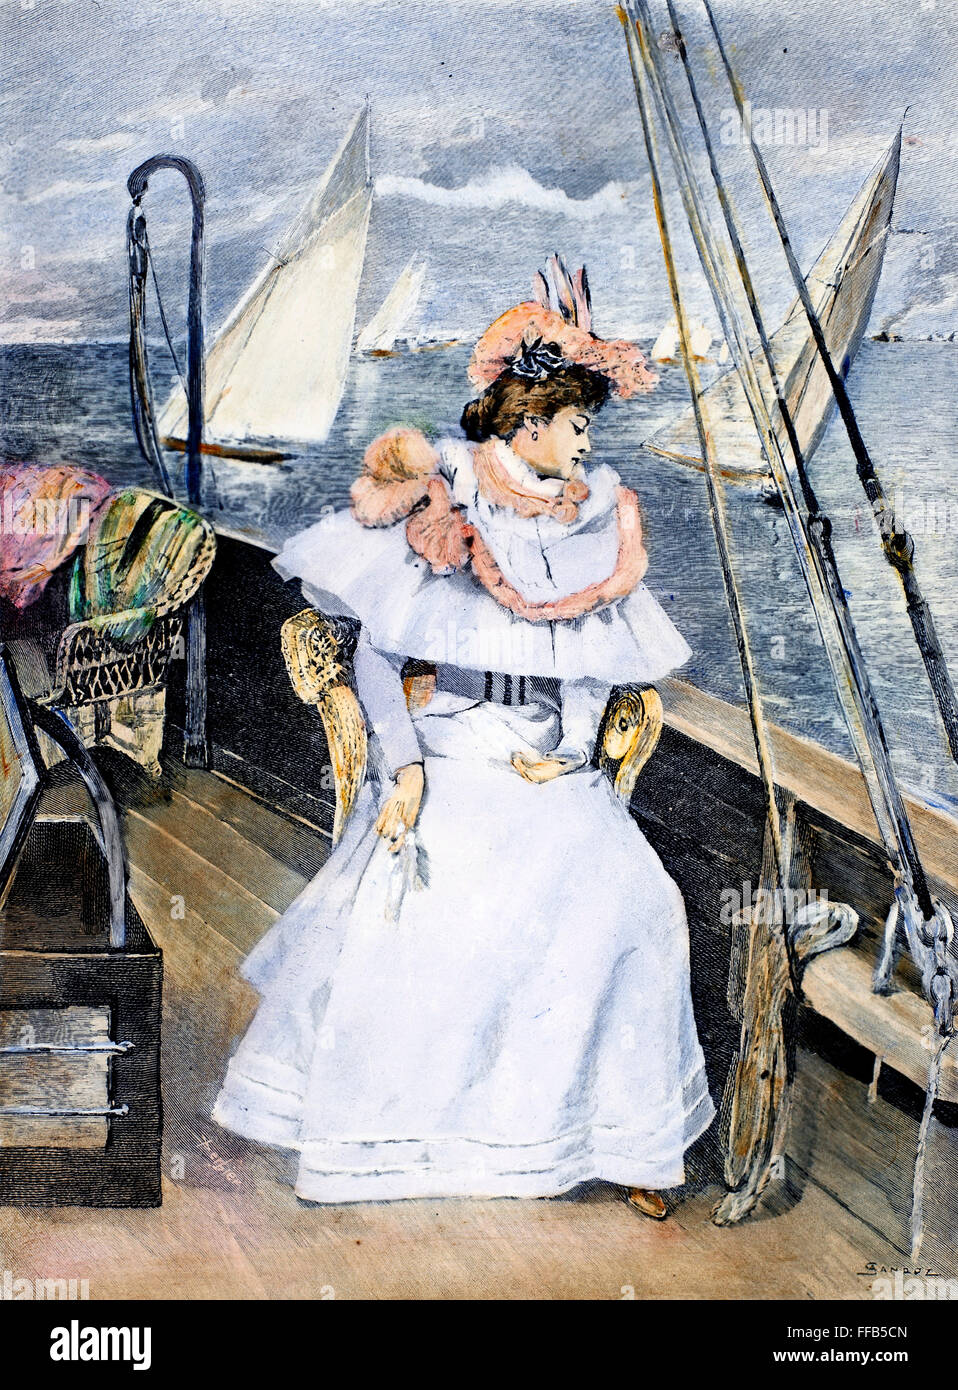 YACHTING COSTUME, 1894. /NA yachting costume à partir de valeur, Paris. La gravure sur bois, cuisine américaine, 1894. Banque D'Images